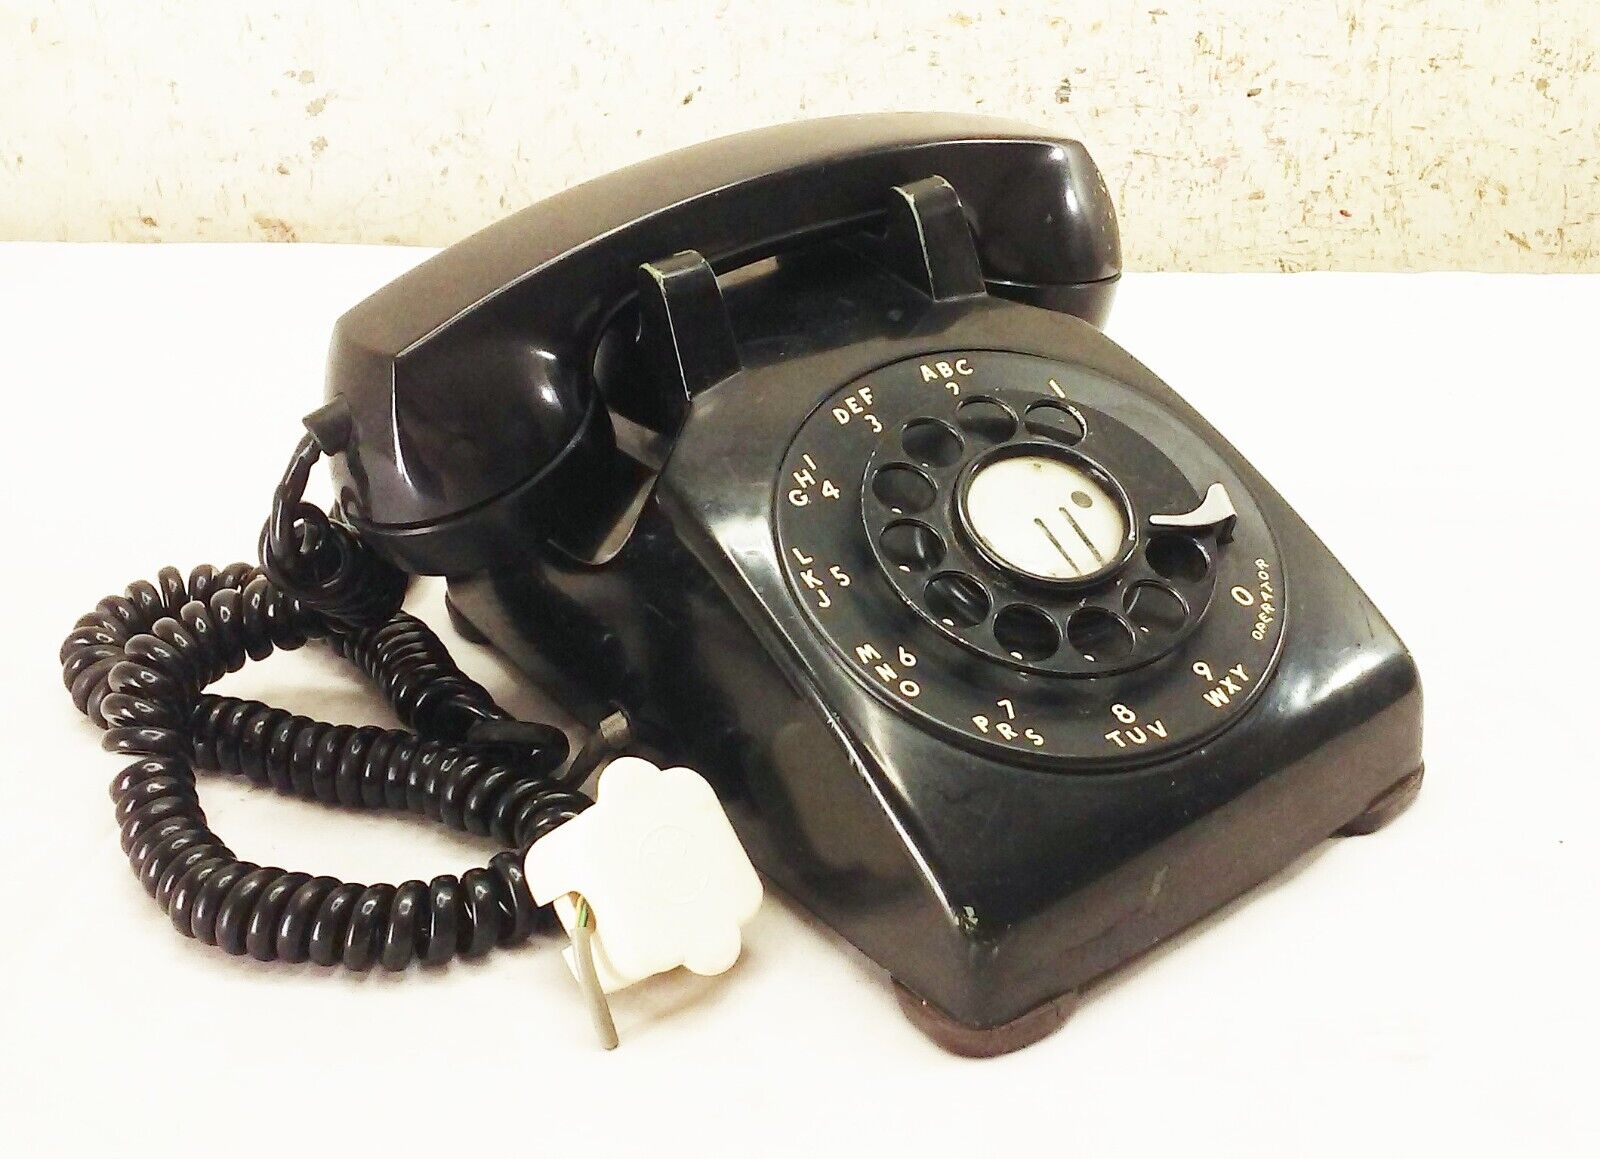 Vtg Black rotary dial corded desk telephone phone retro 1950s Bell system